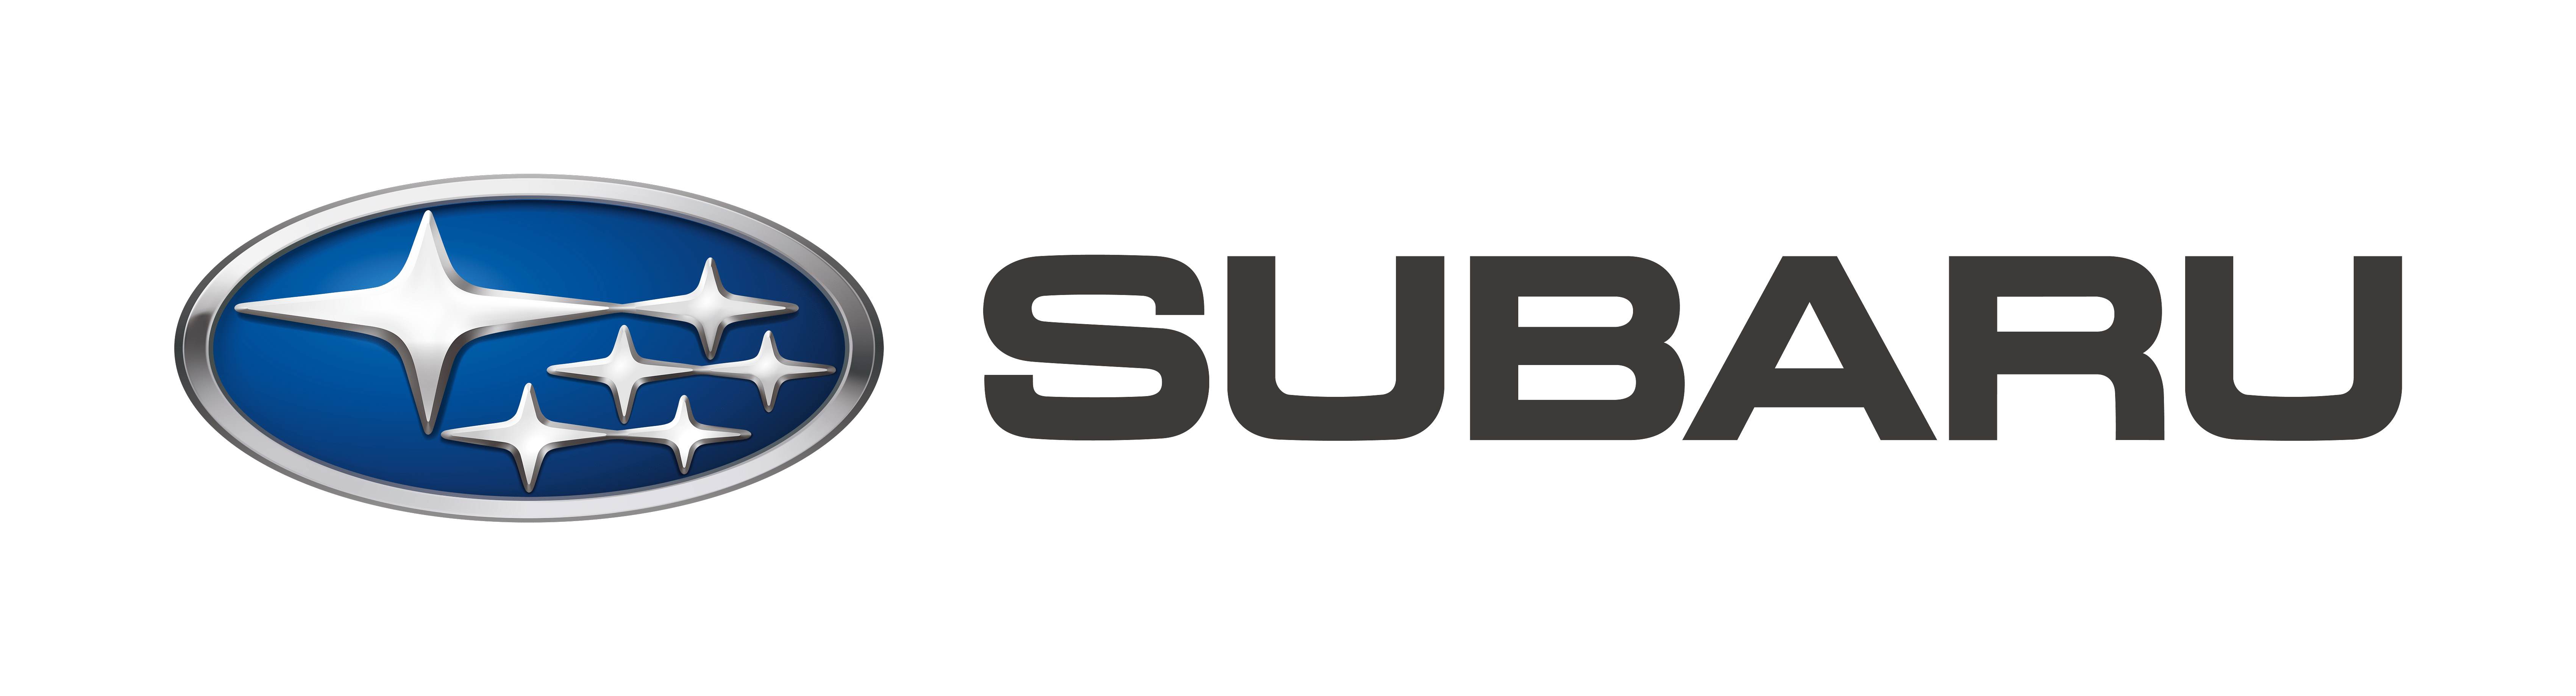 Subaru Canada logo